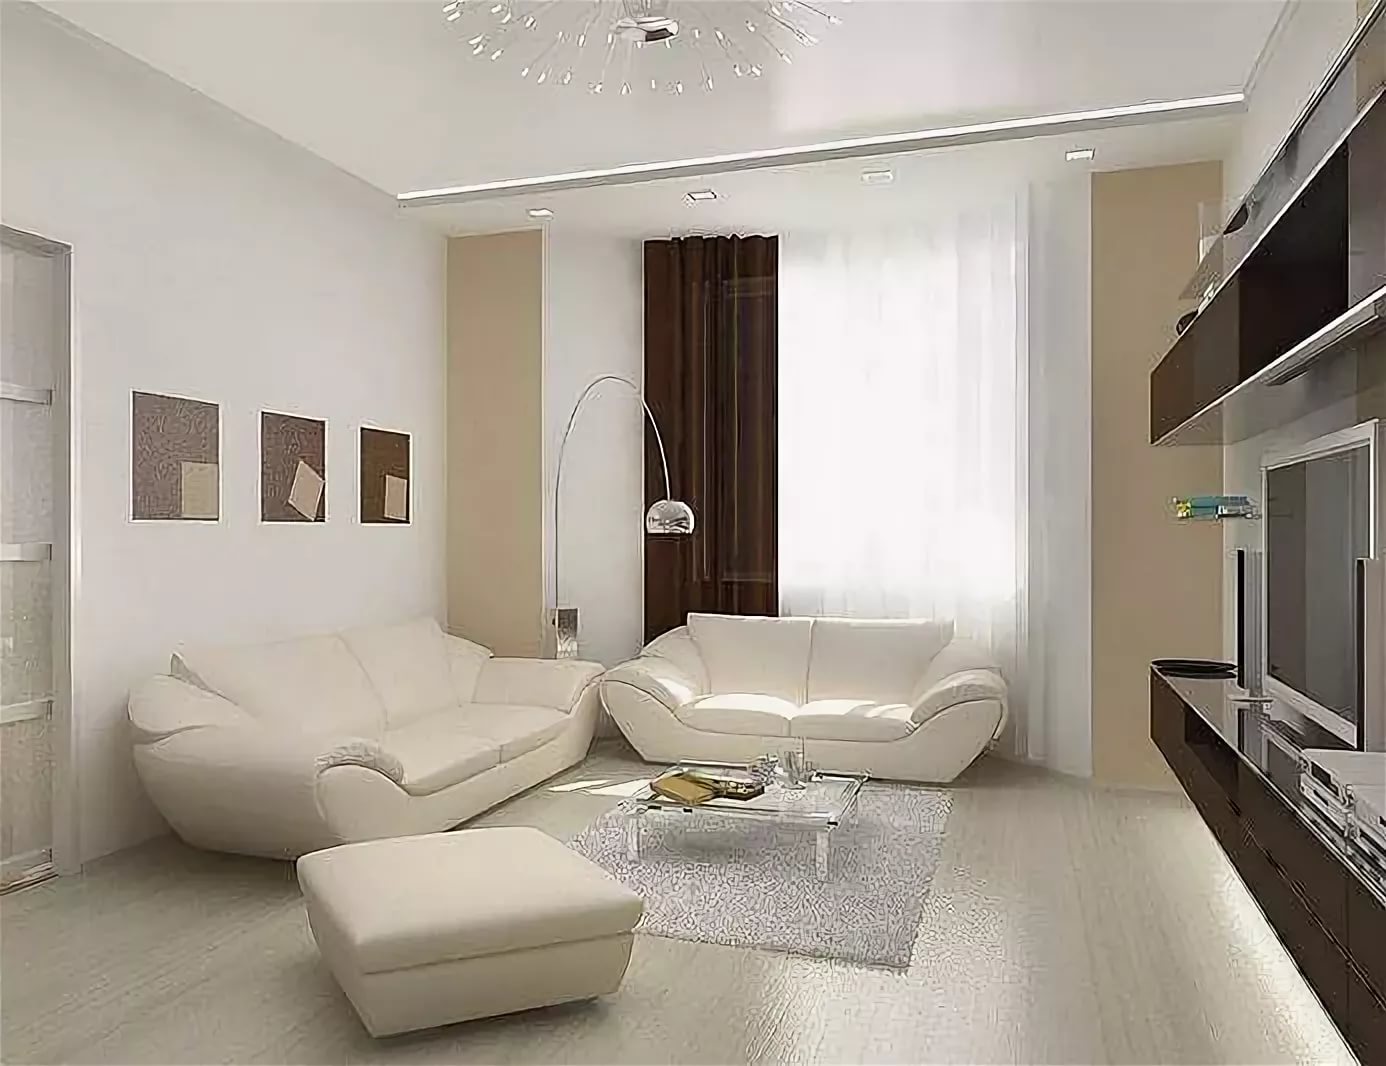 современный интерьер гостиной в светлых тонах прямоугольной формы